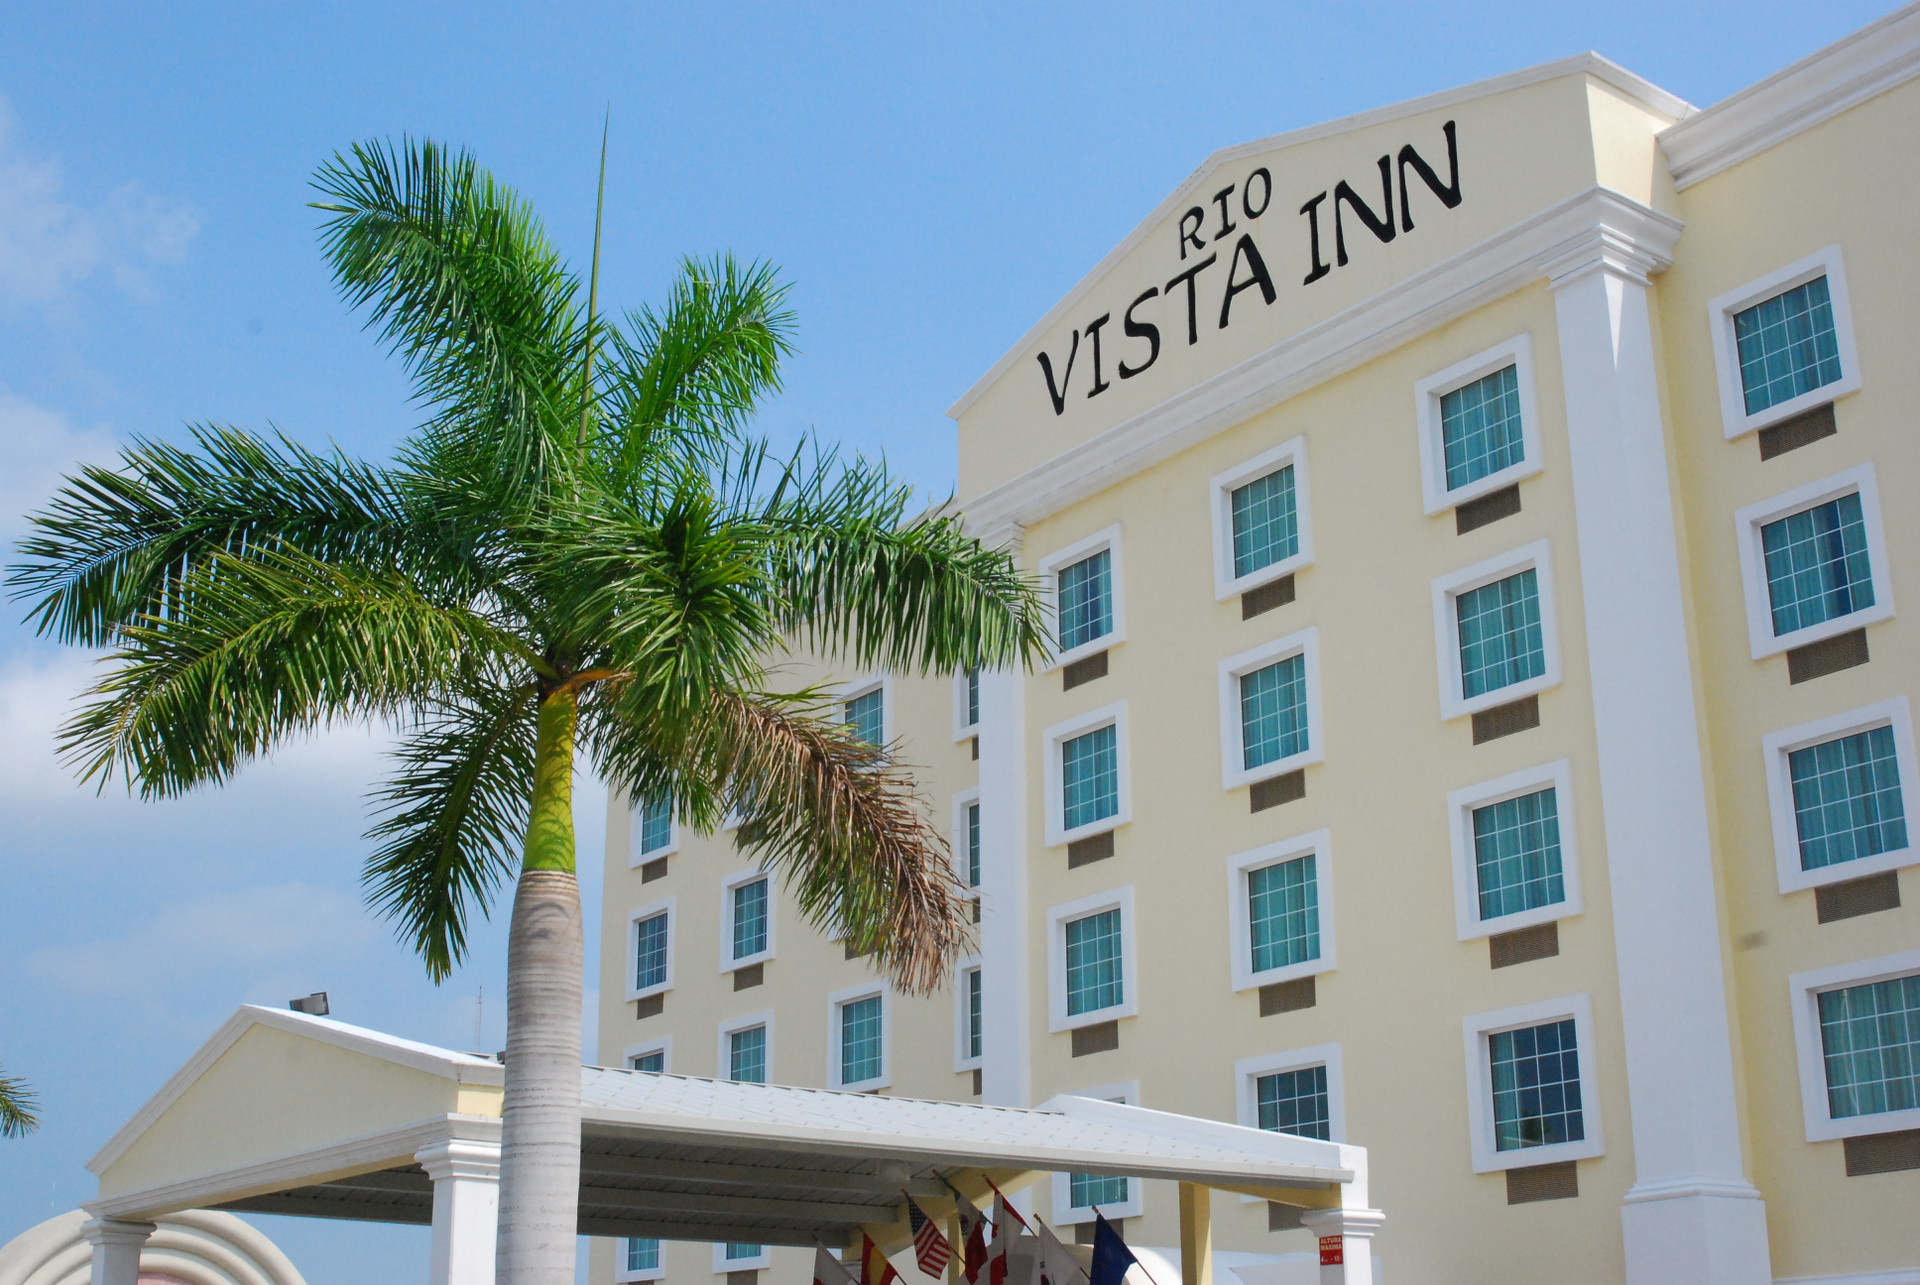 Variados (as) Rio Vista Inn Business High Class Hotel